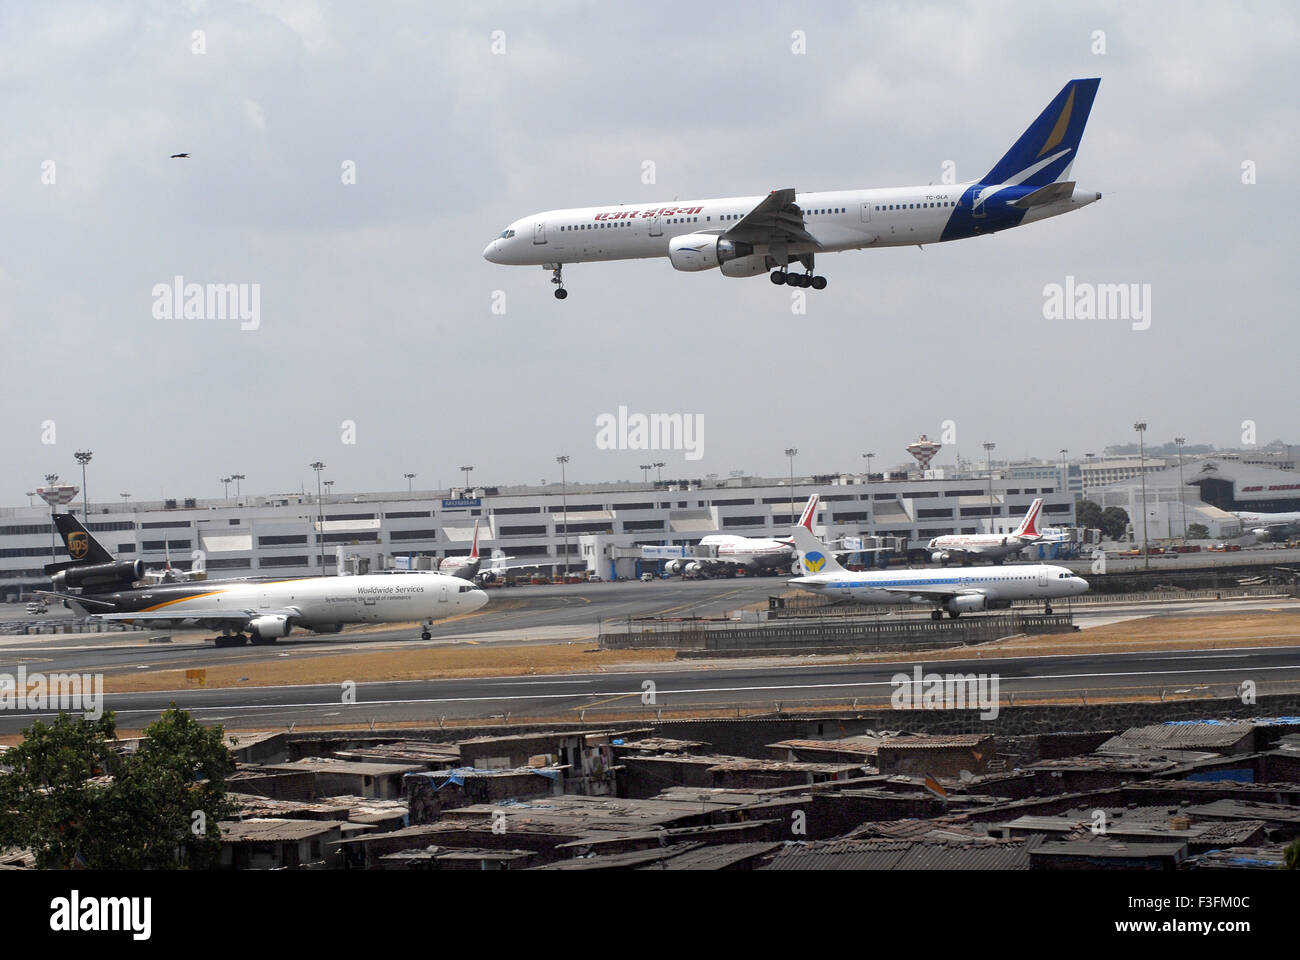 Airlines avion de l'aéroport Sahar préparer les terres de l'Aéroport International Chatrapati Shivaji Mumbai airport de taudis Banque D'Images